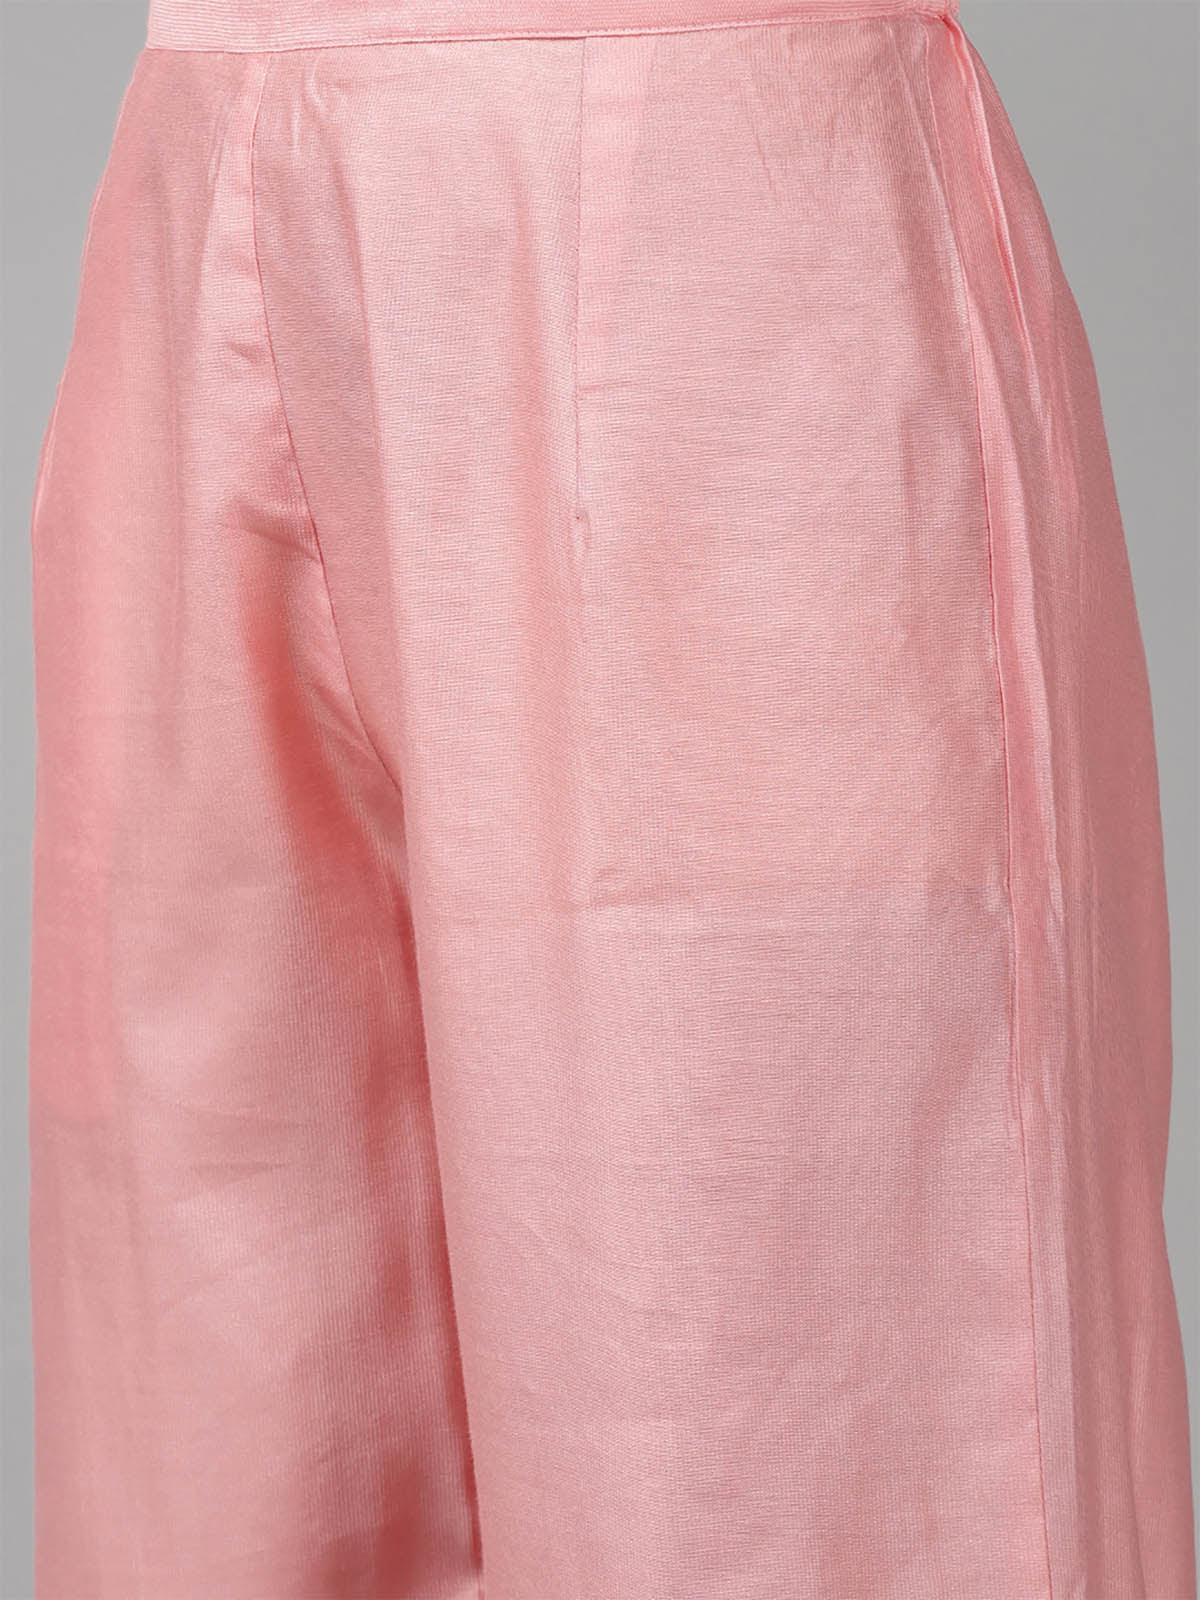 Women's Pink Embroidered Straight Kurta Palazzo Set - Odette